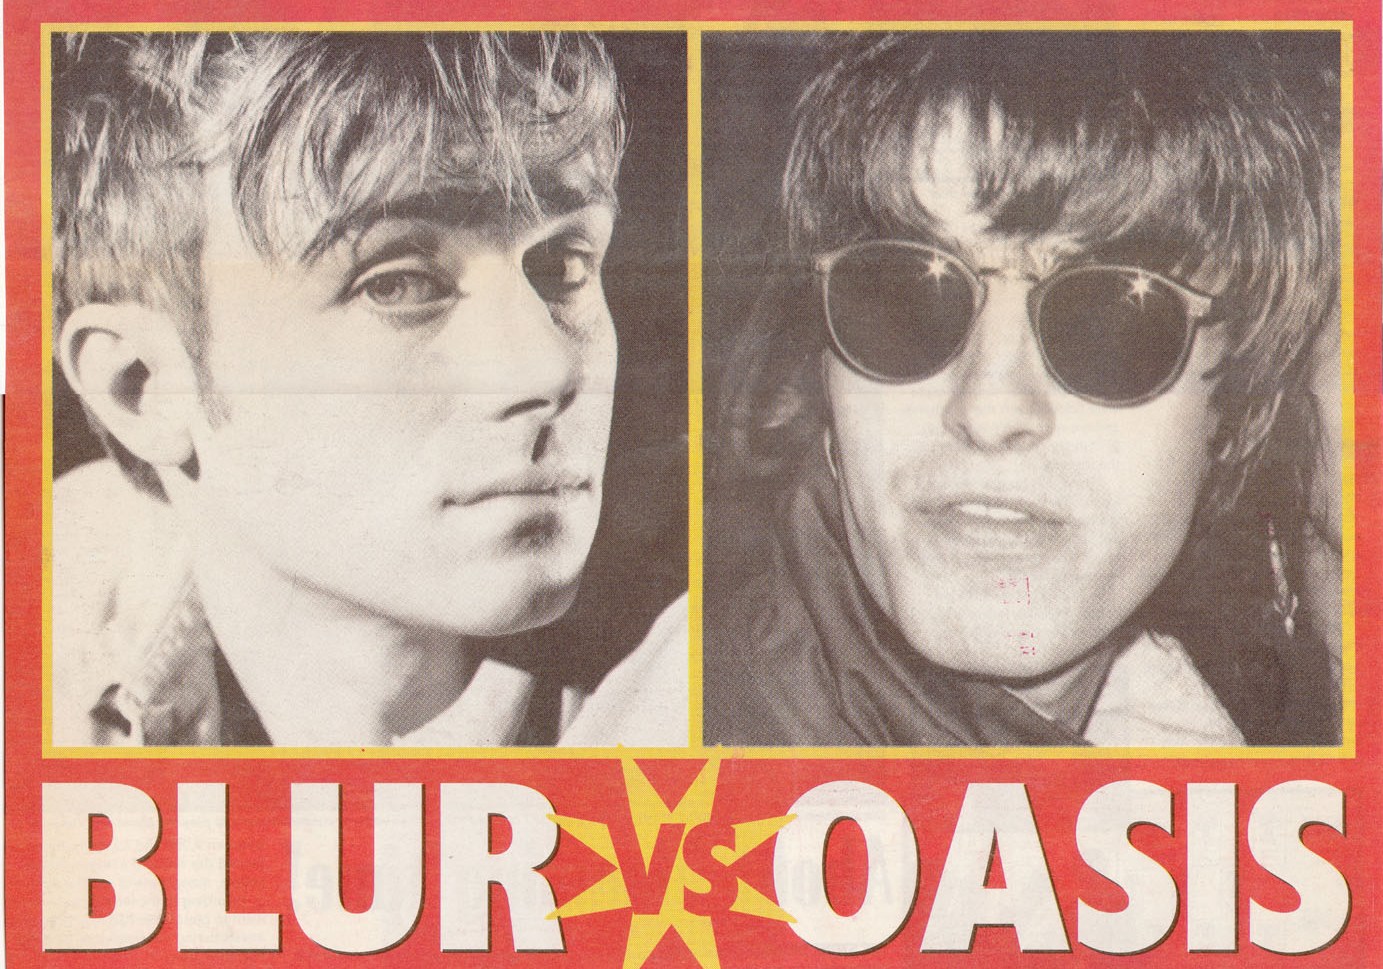 Blur vs Oasis/reprint NME